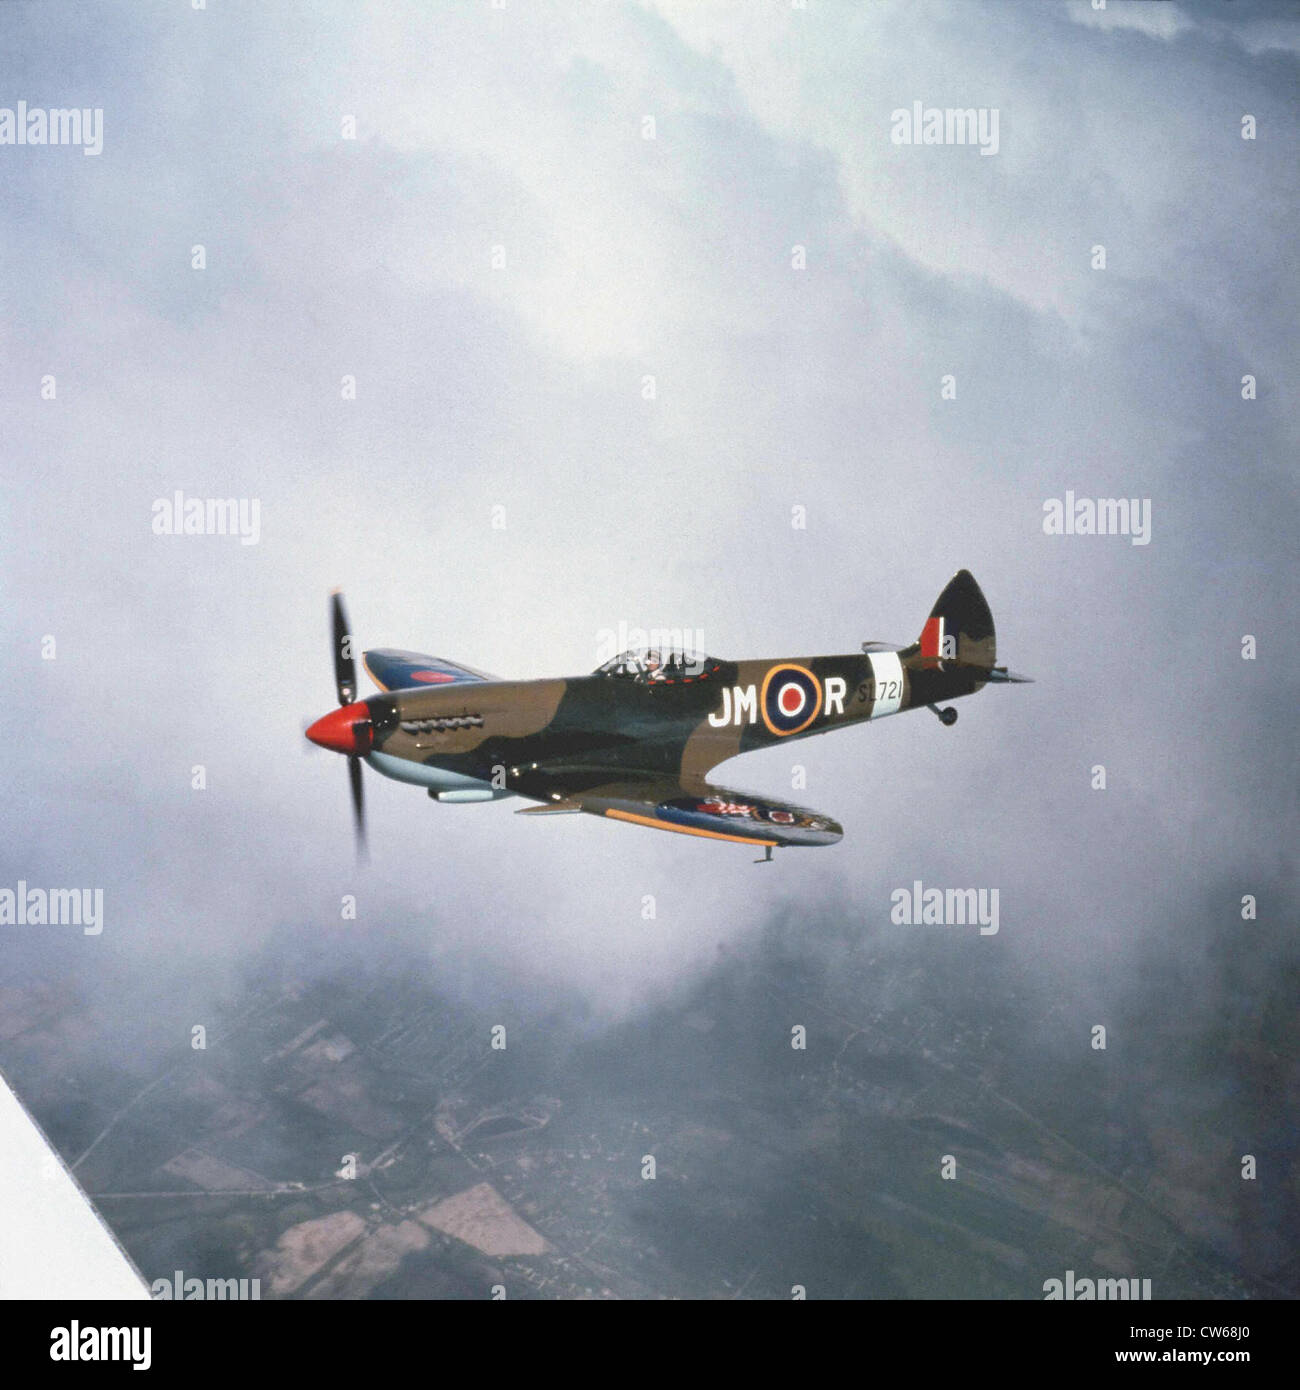 Supermarine Spitfire Mk.XVI, combattant de la Seconde Guerre mondiale. Banque D'Images